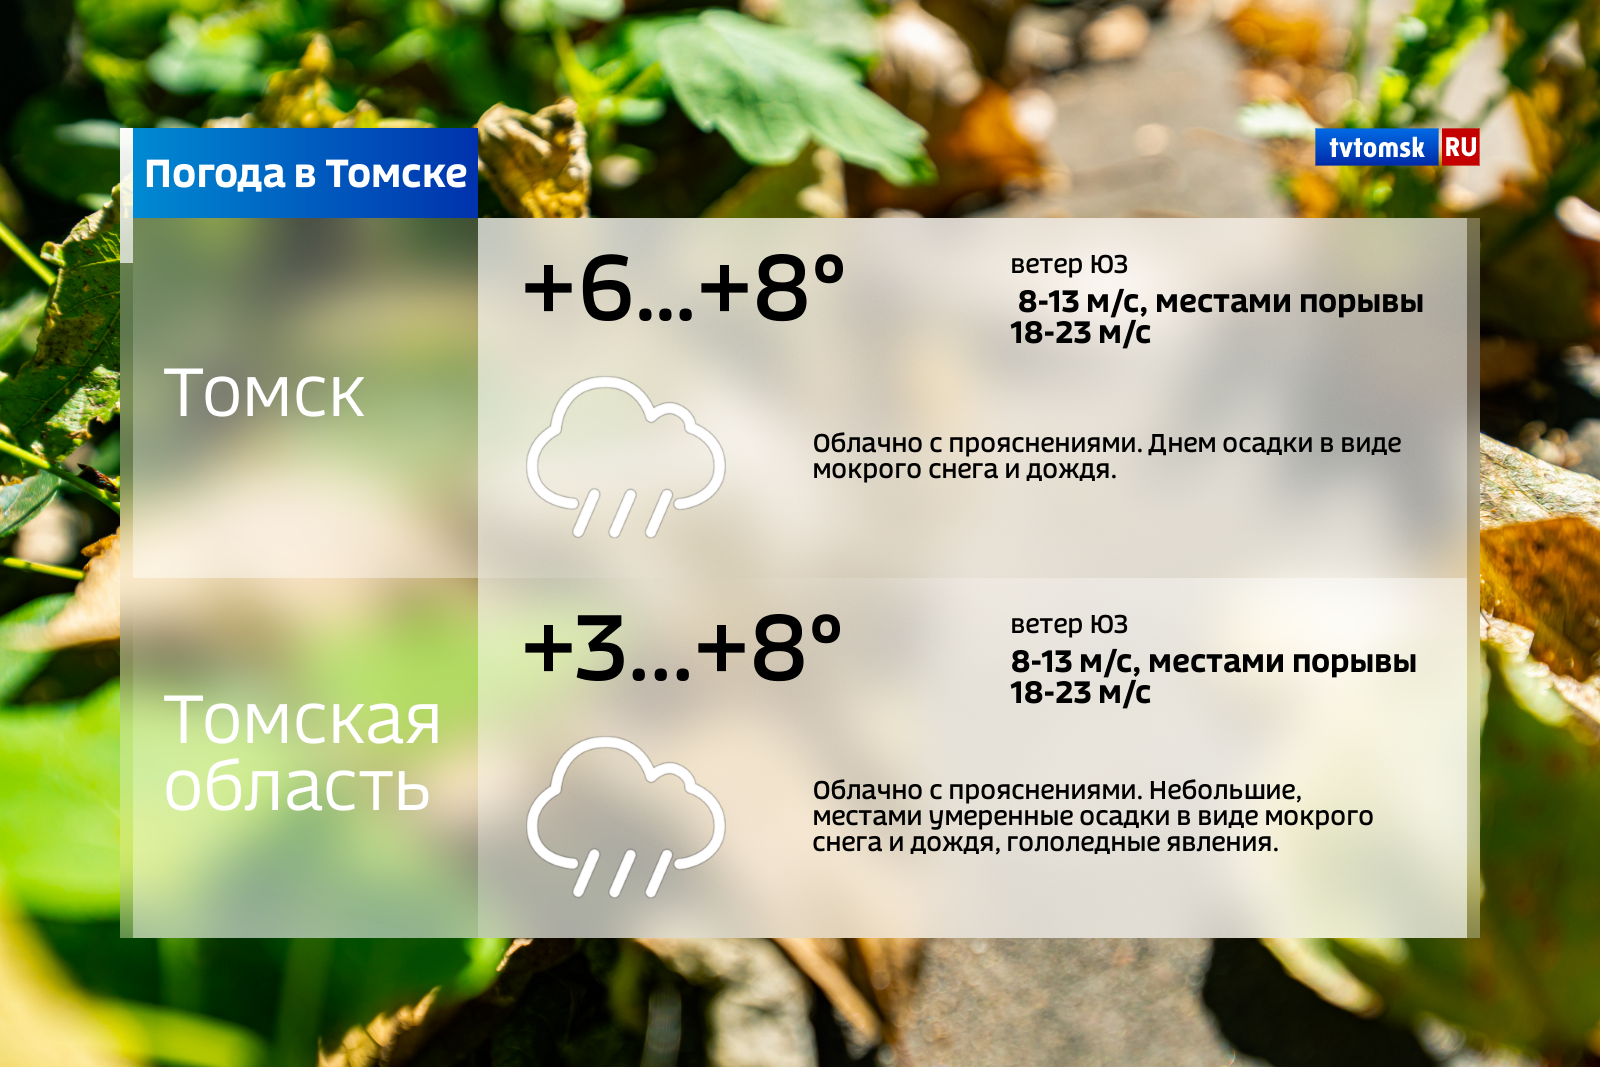 Погода в томском. Погода в Томске. Погода в Томске сегодня. Погода в Томске на 10. Погода в Томске на 3.